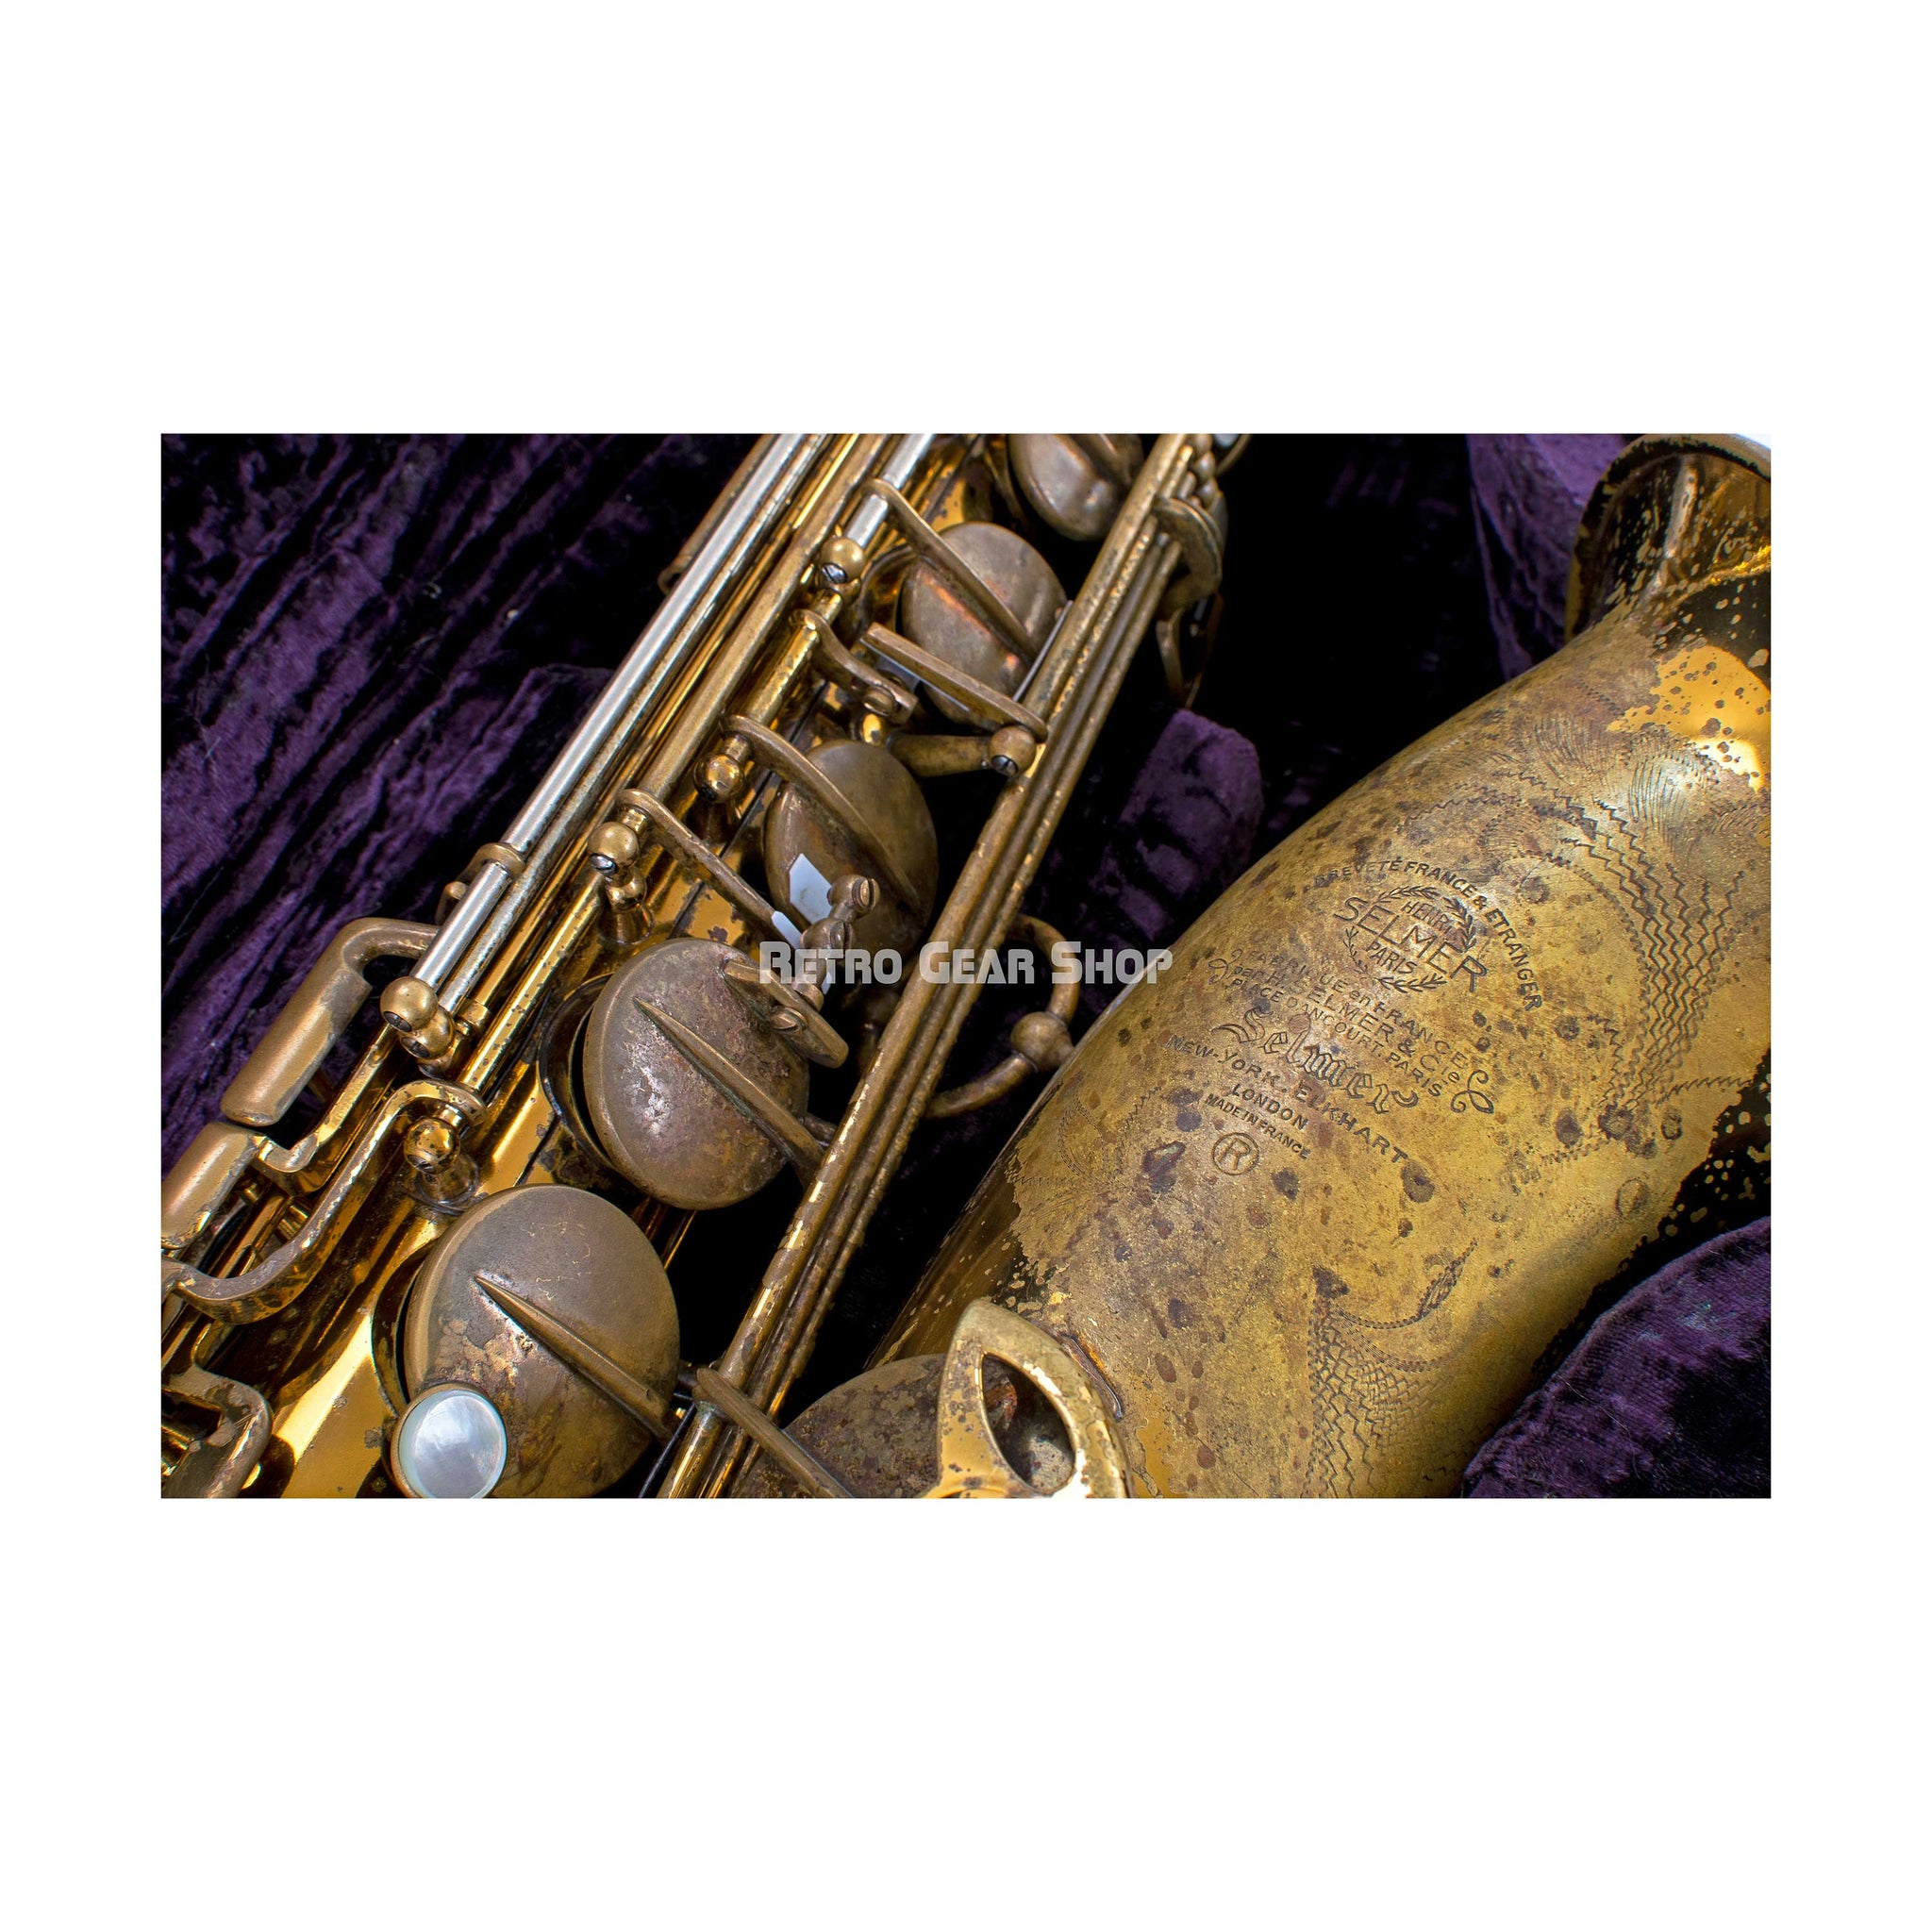 Selmer Mark VI Tenor Saxophone 1956 Stamp